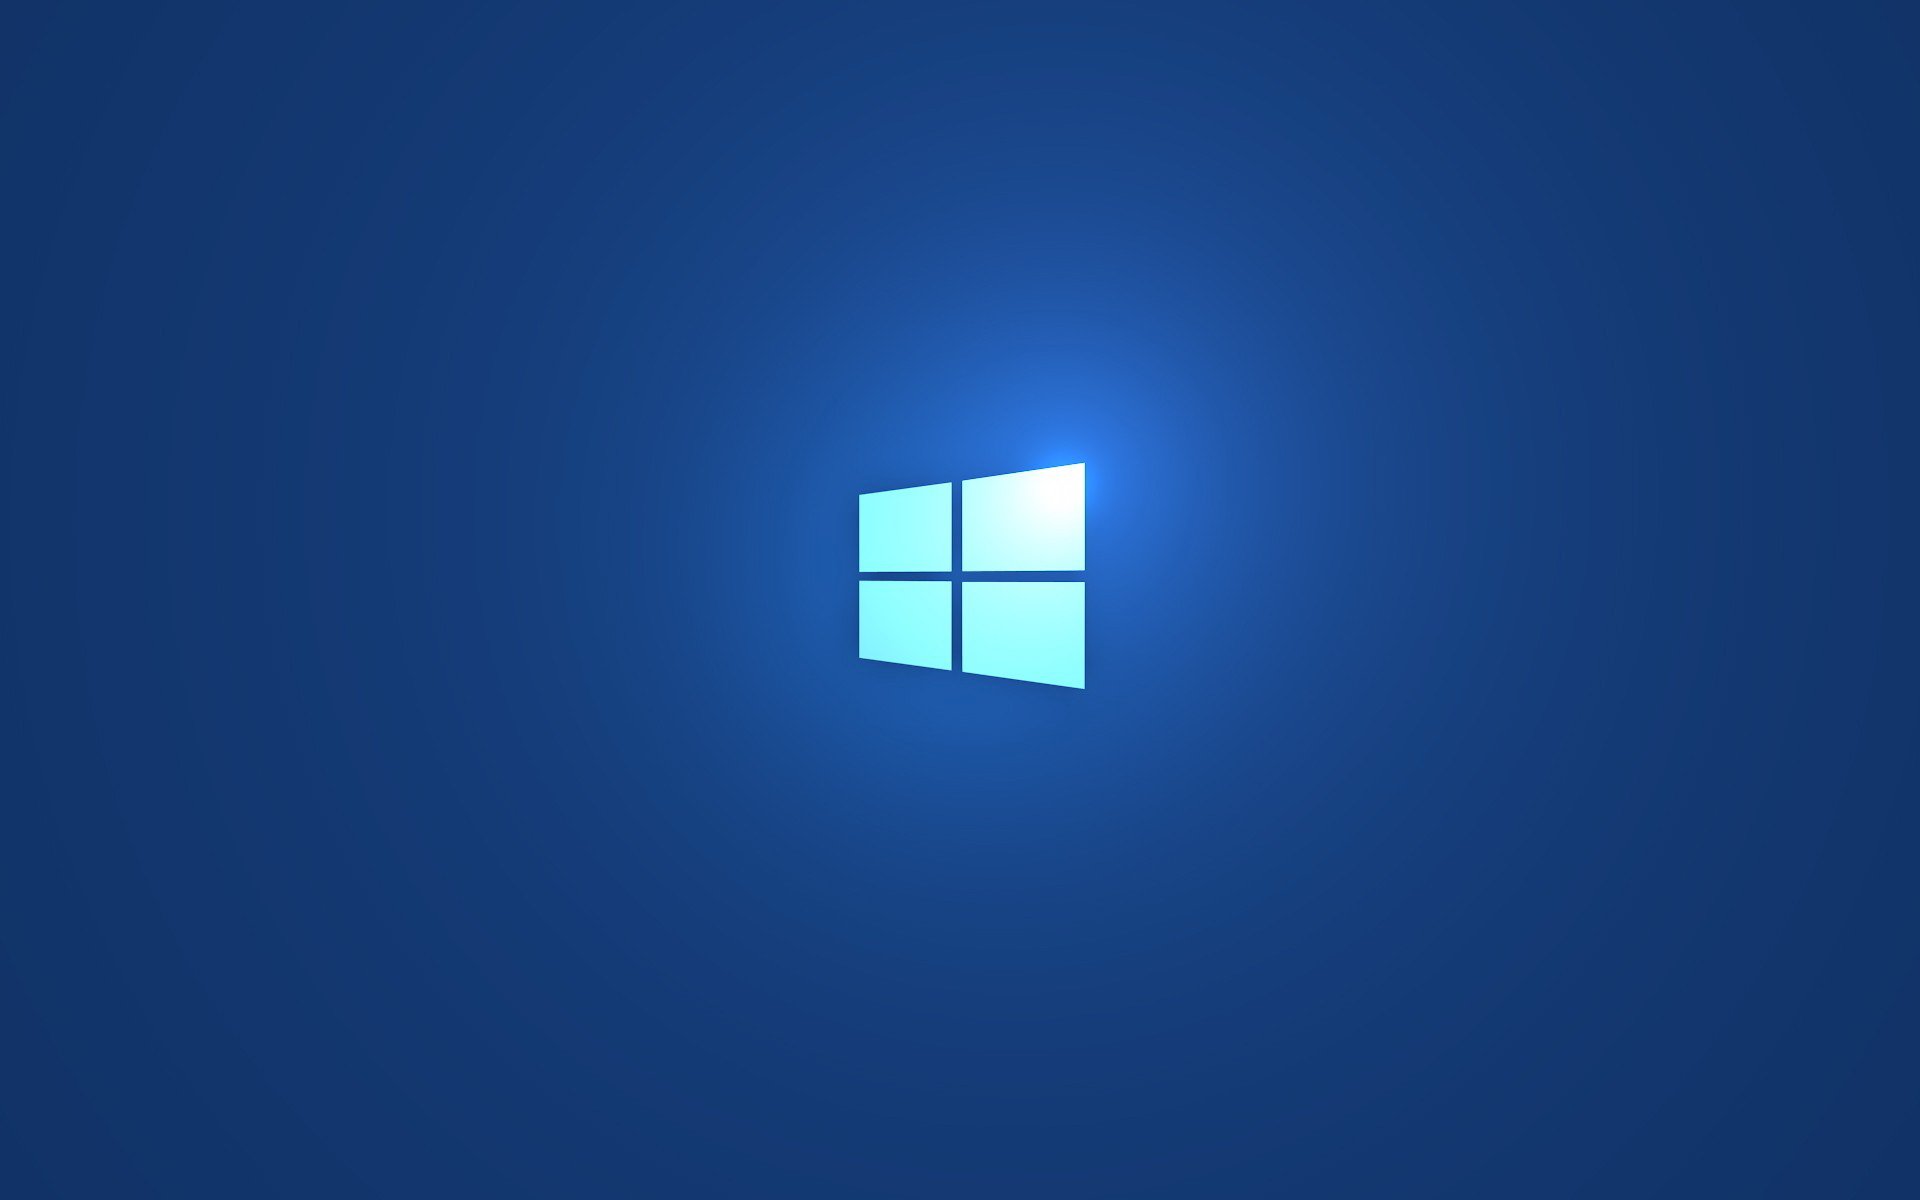 windows 8.1 wallpaper,blau,kobaltblau,tagsüber,elektrisches blau,schriftart